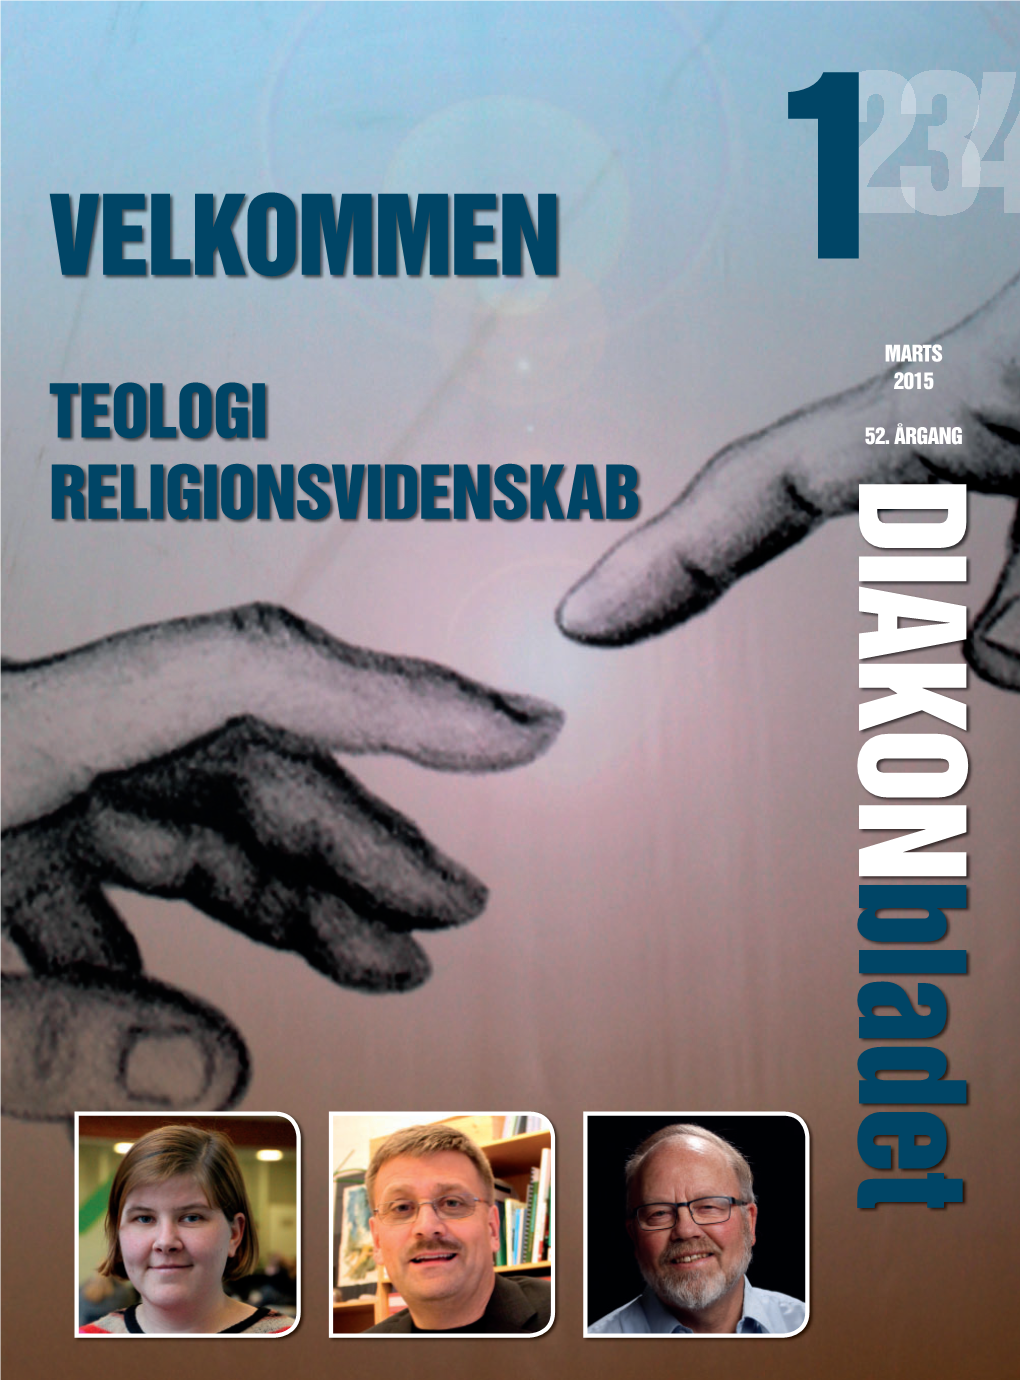 DIAKON Bladet Diakonforbundet2 Diakonbladet Filadelﬁ a Og Marts 2015 Diakonhøjskolens Diakonforbund Kan Det Betale Sig?